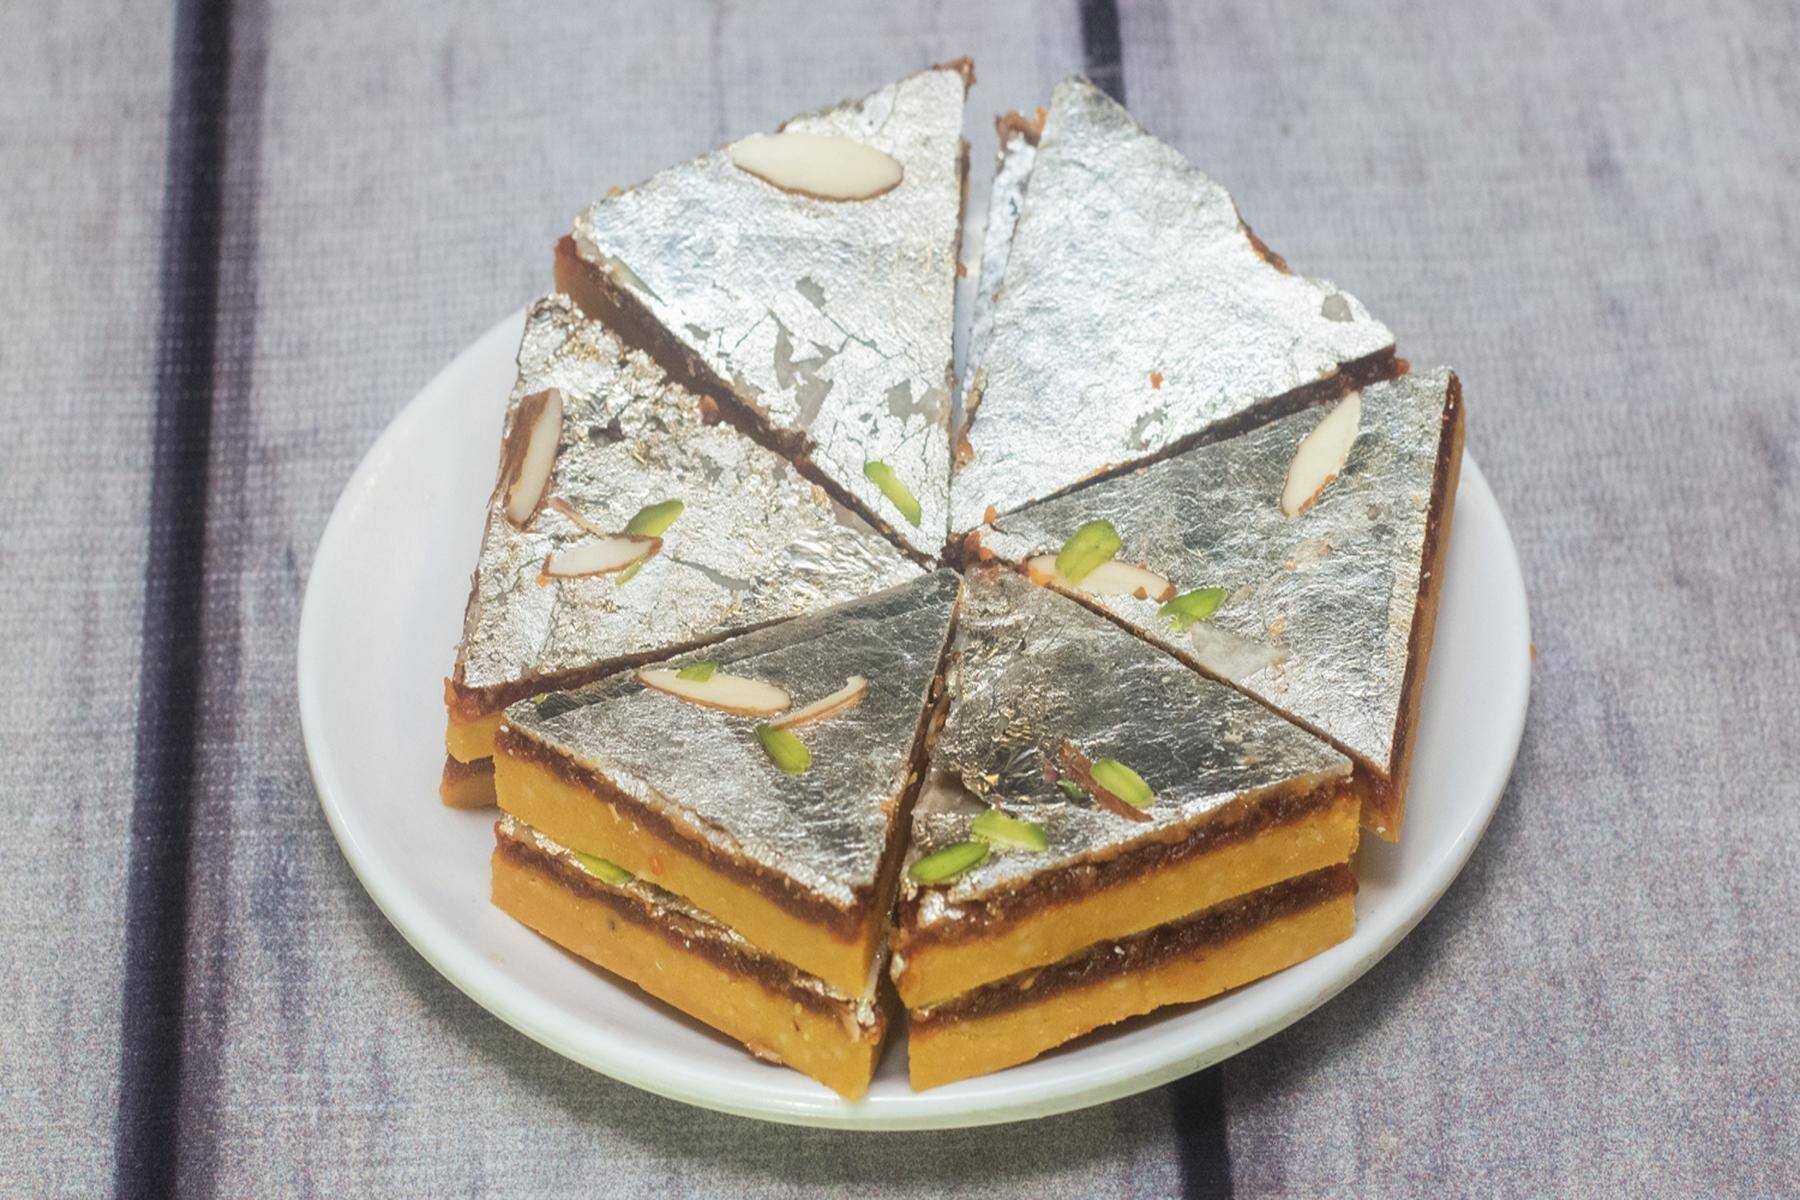 ફરાળી કેક બનાવવાની રીત | farali cake banavani rit recipe in gujarati